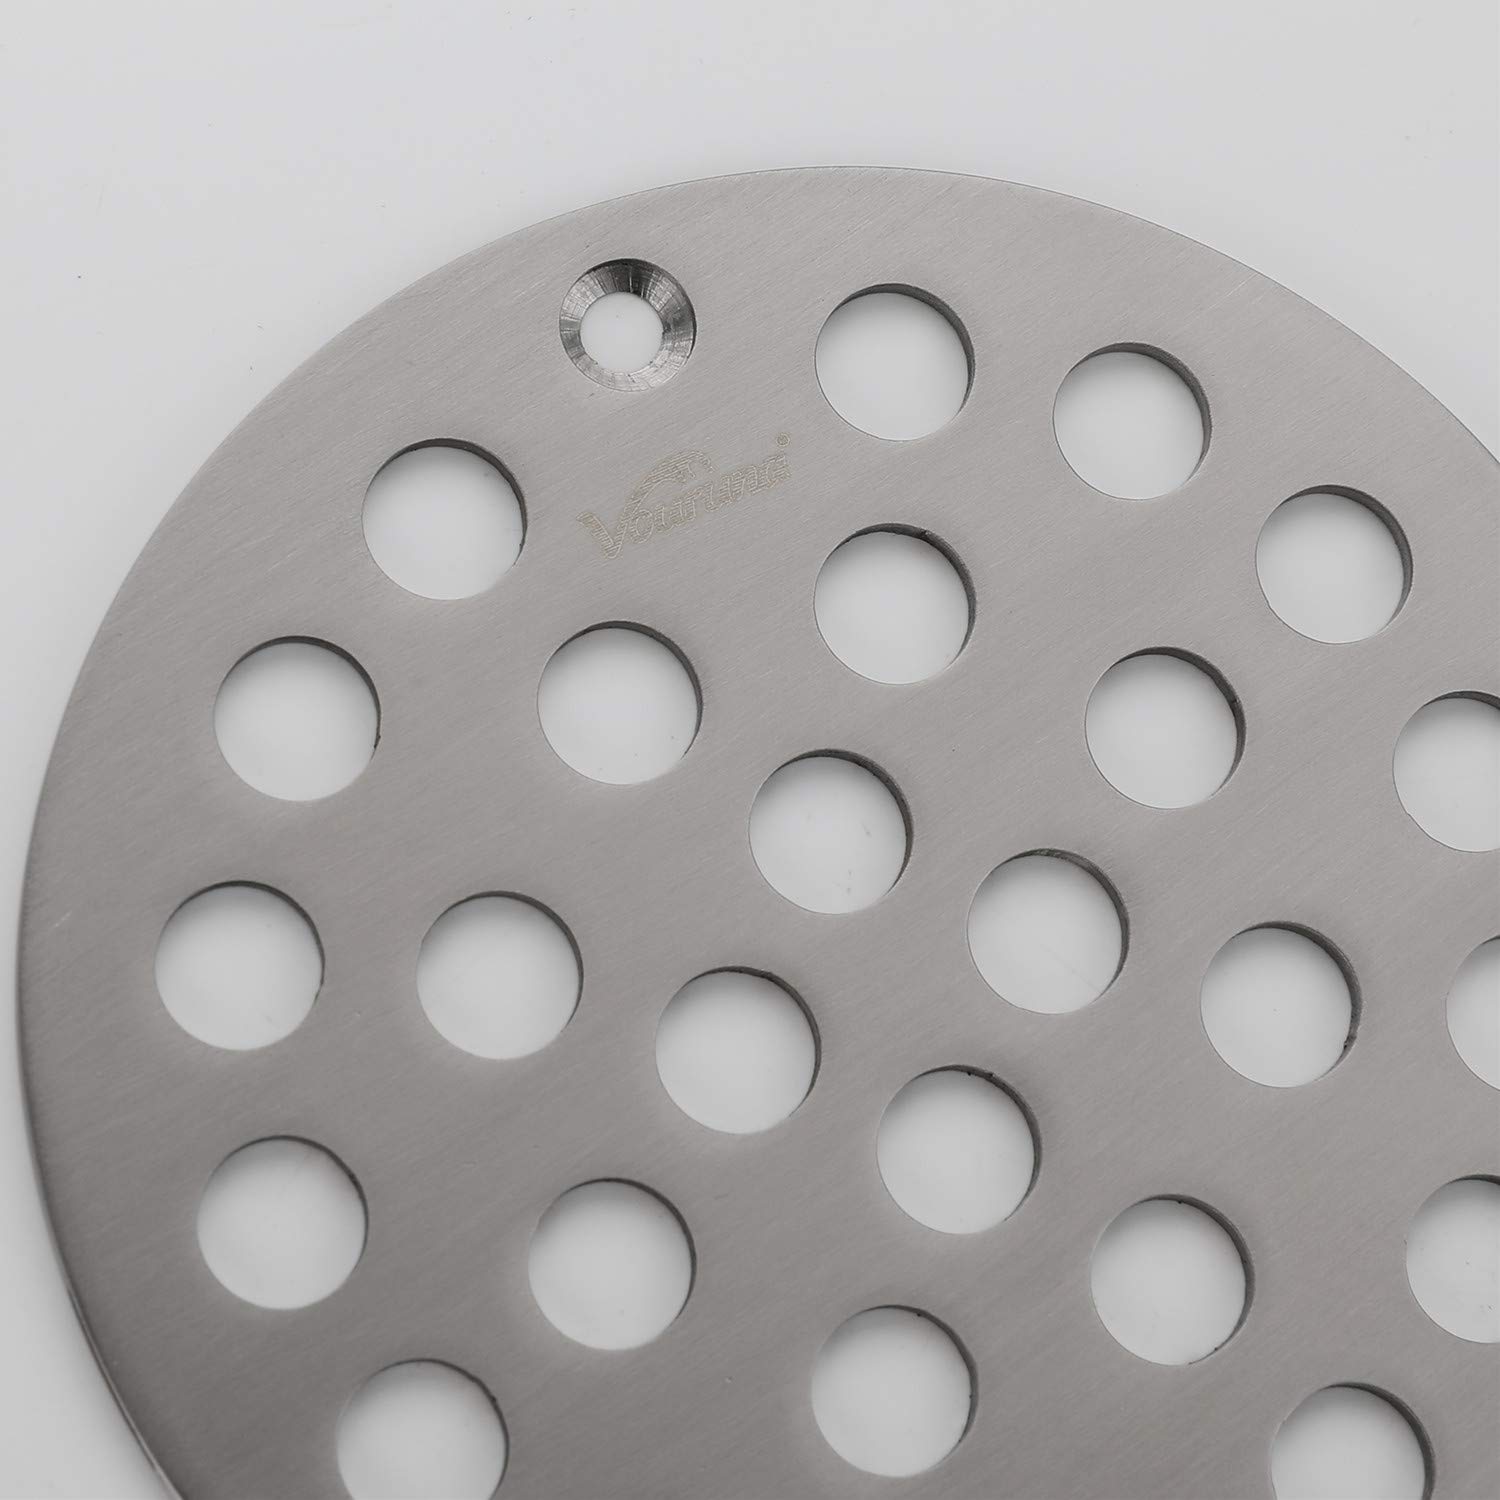 VOURUNA 4-Inch Screw-in Shower Drainer Cover Replacement Floor Strainer Floor Drain Brushed Nickel